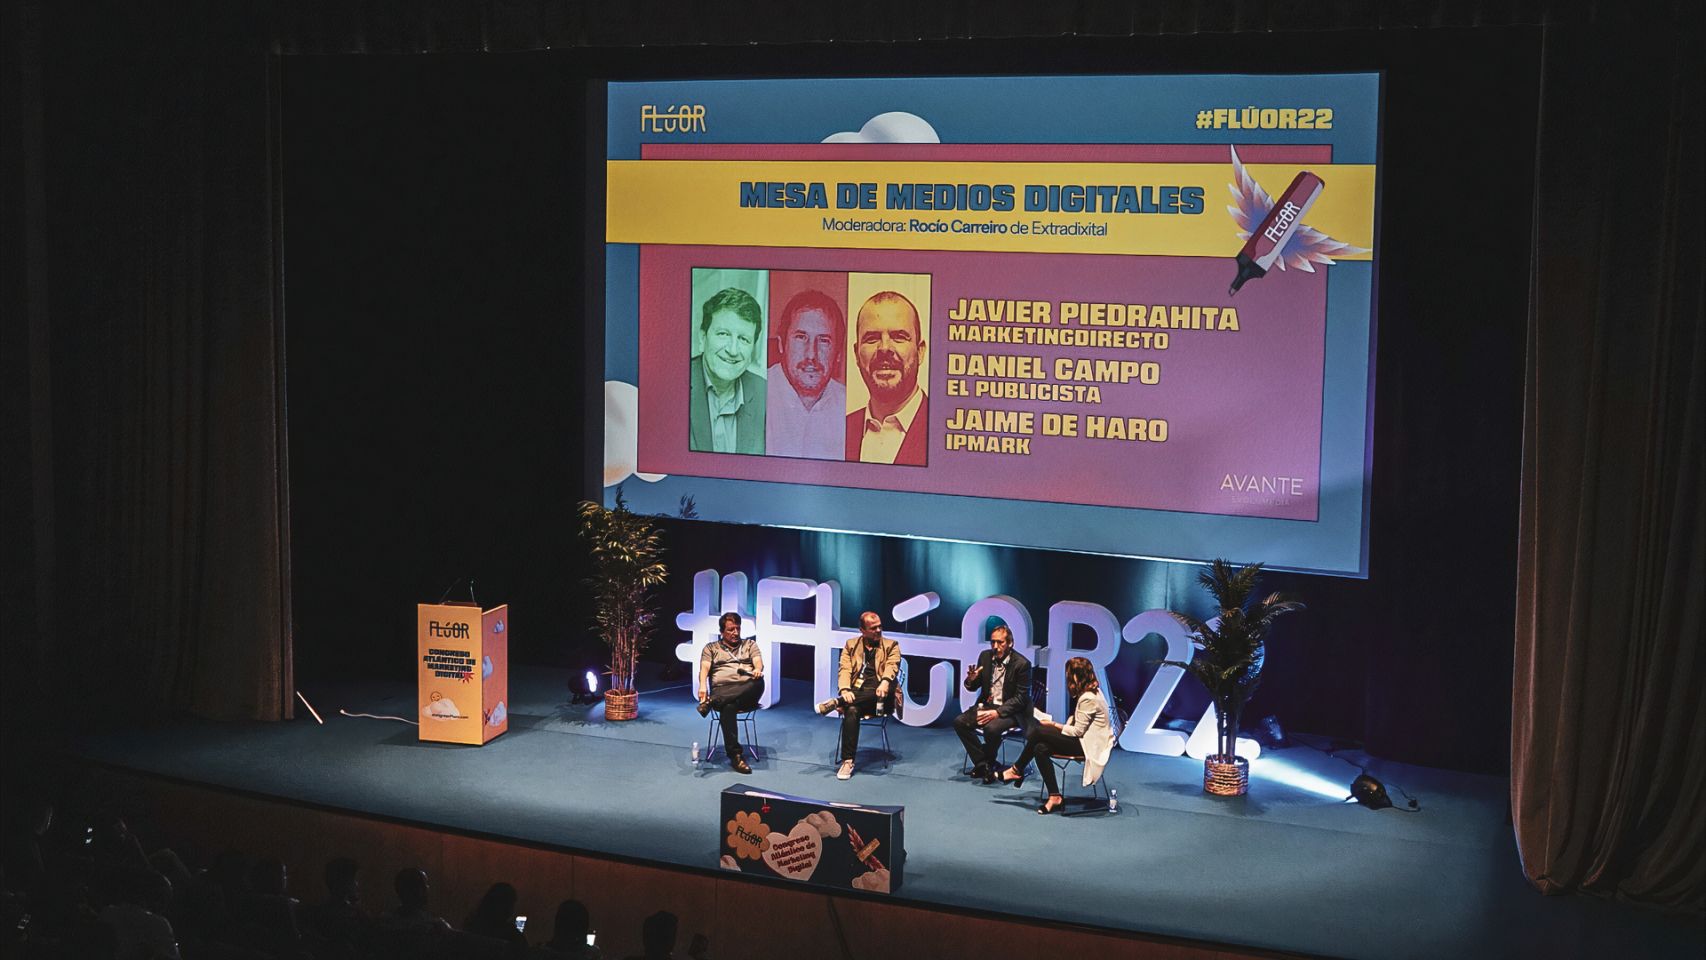 Primera jornada del congreso de marketing digital Flúor 2022 (Pontevedra).